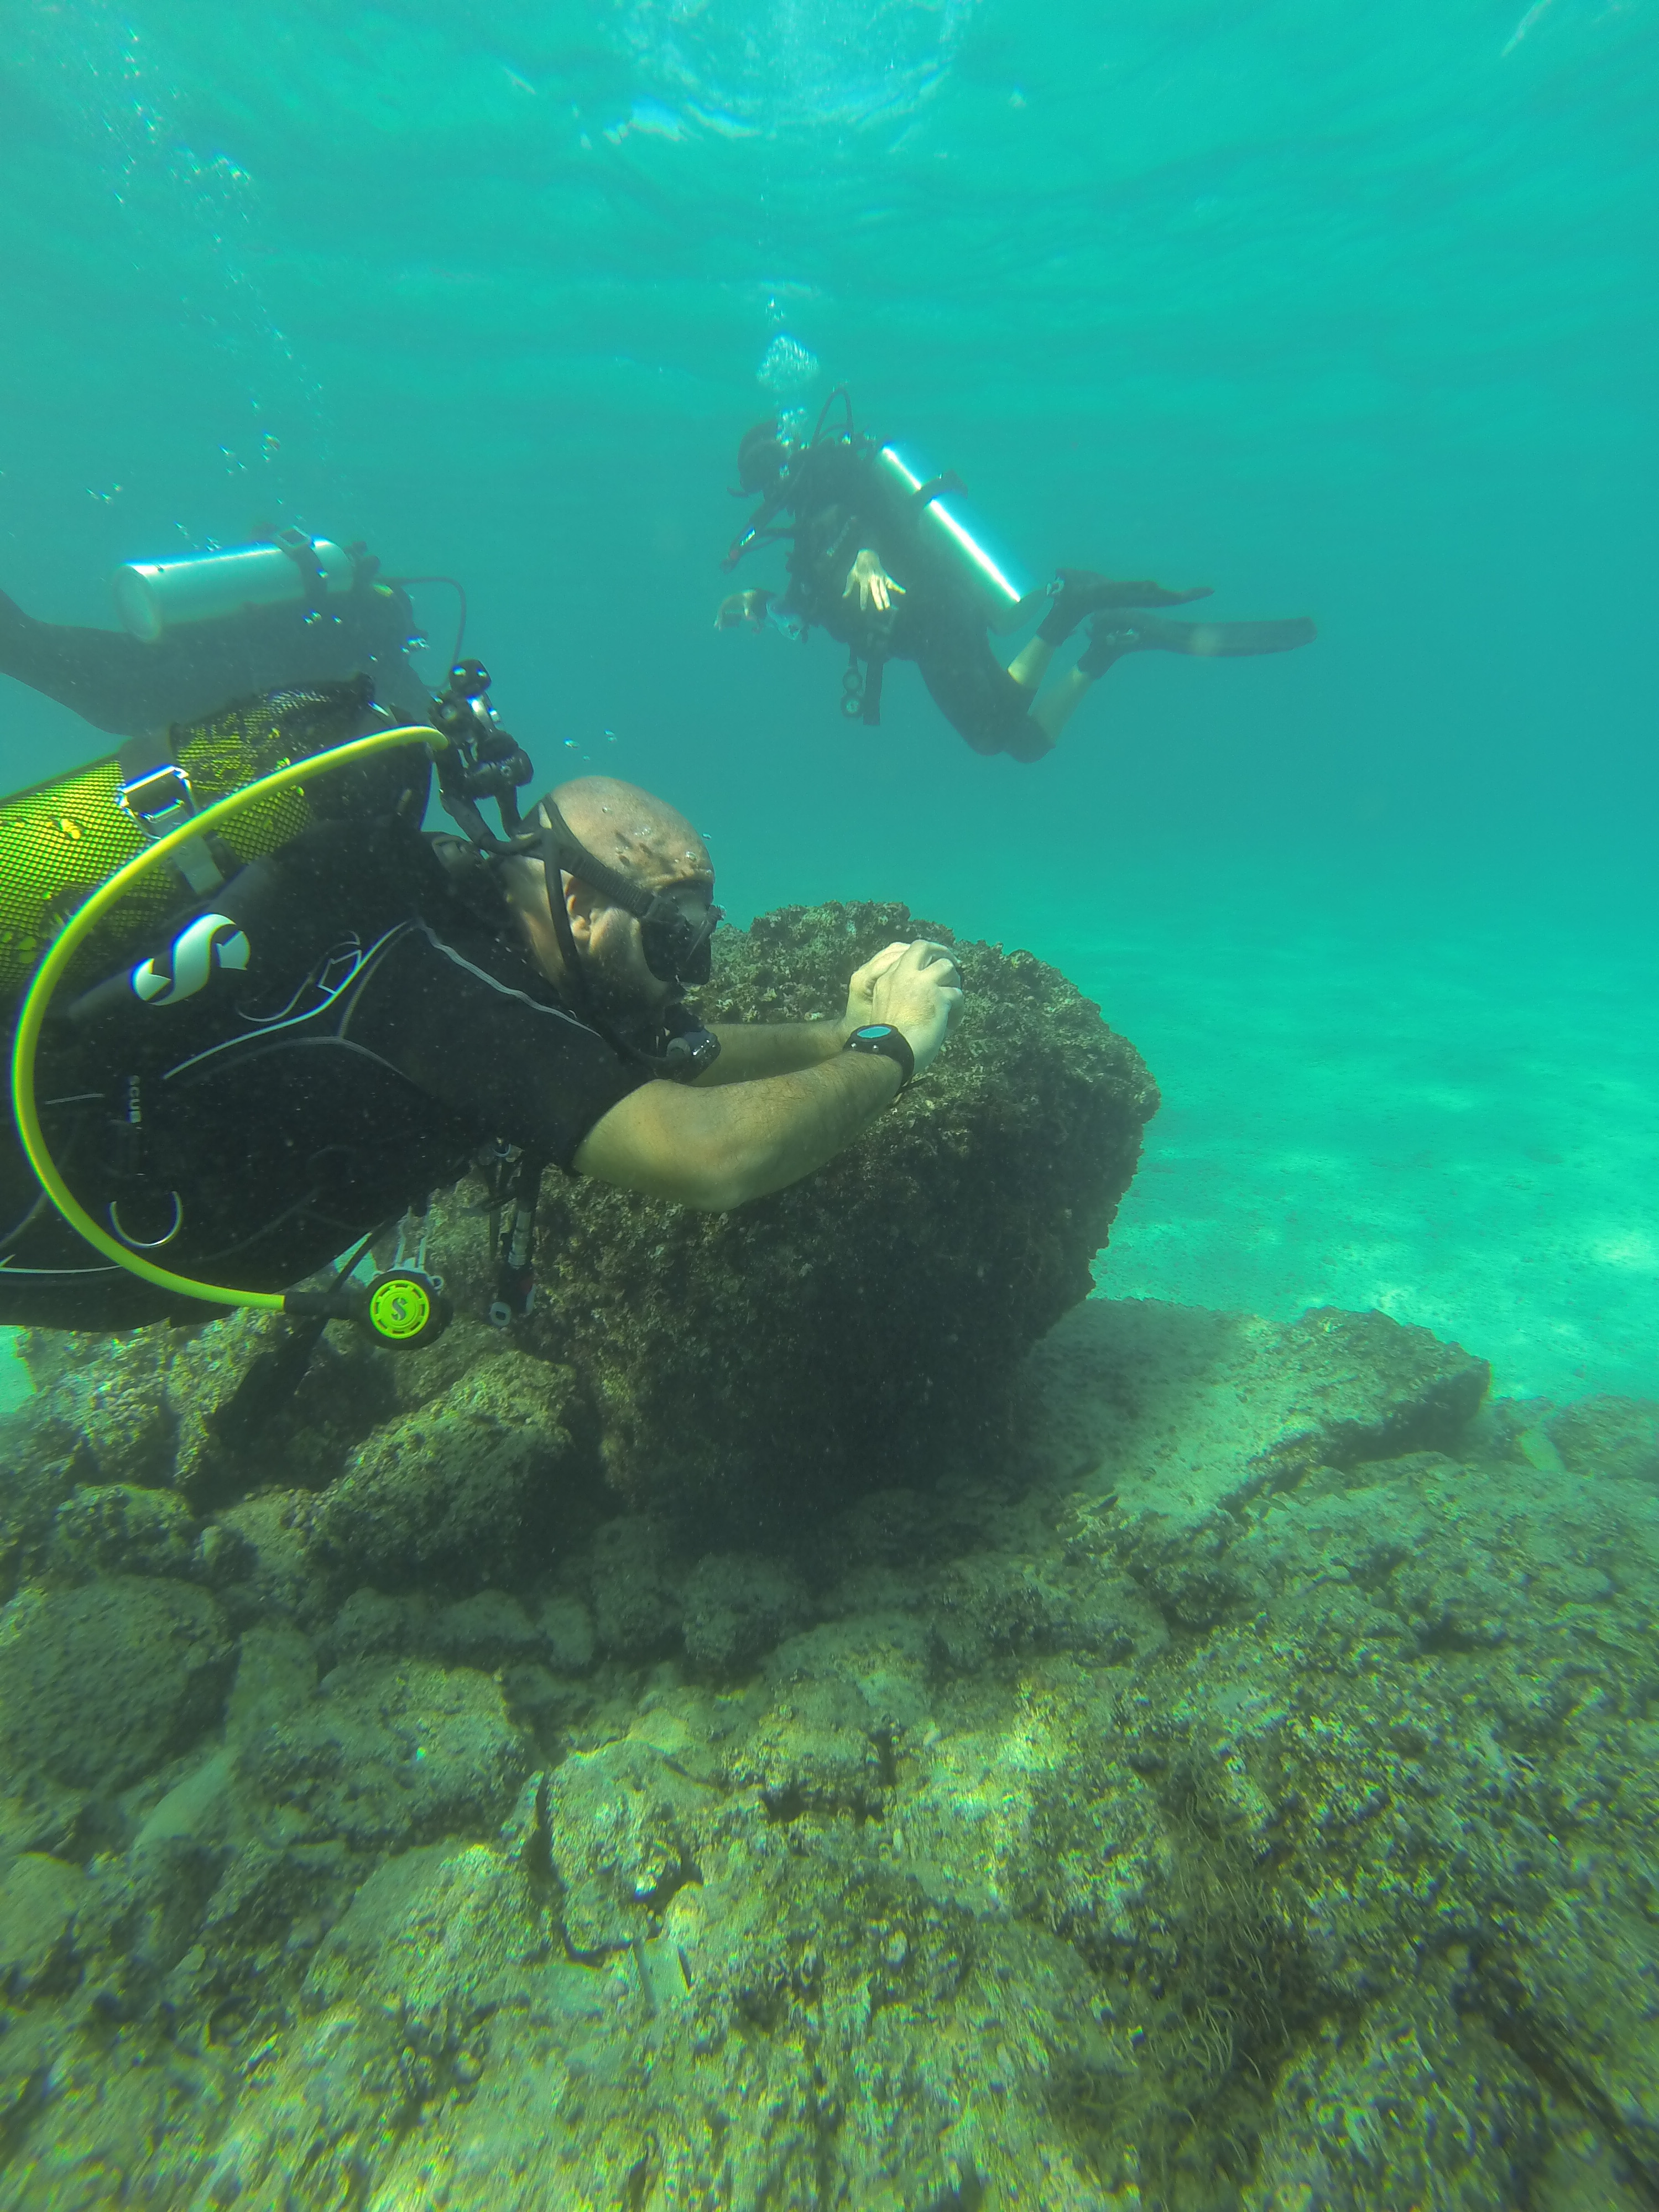 Underwater recording exercise using cameras